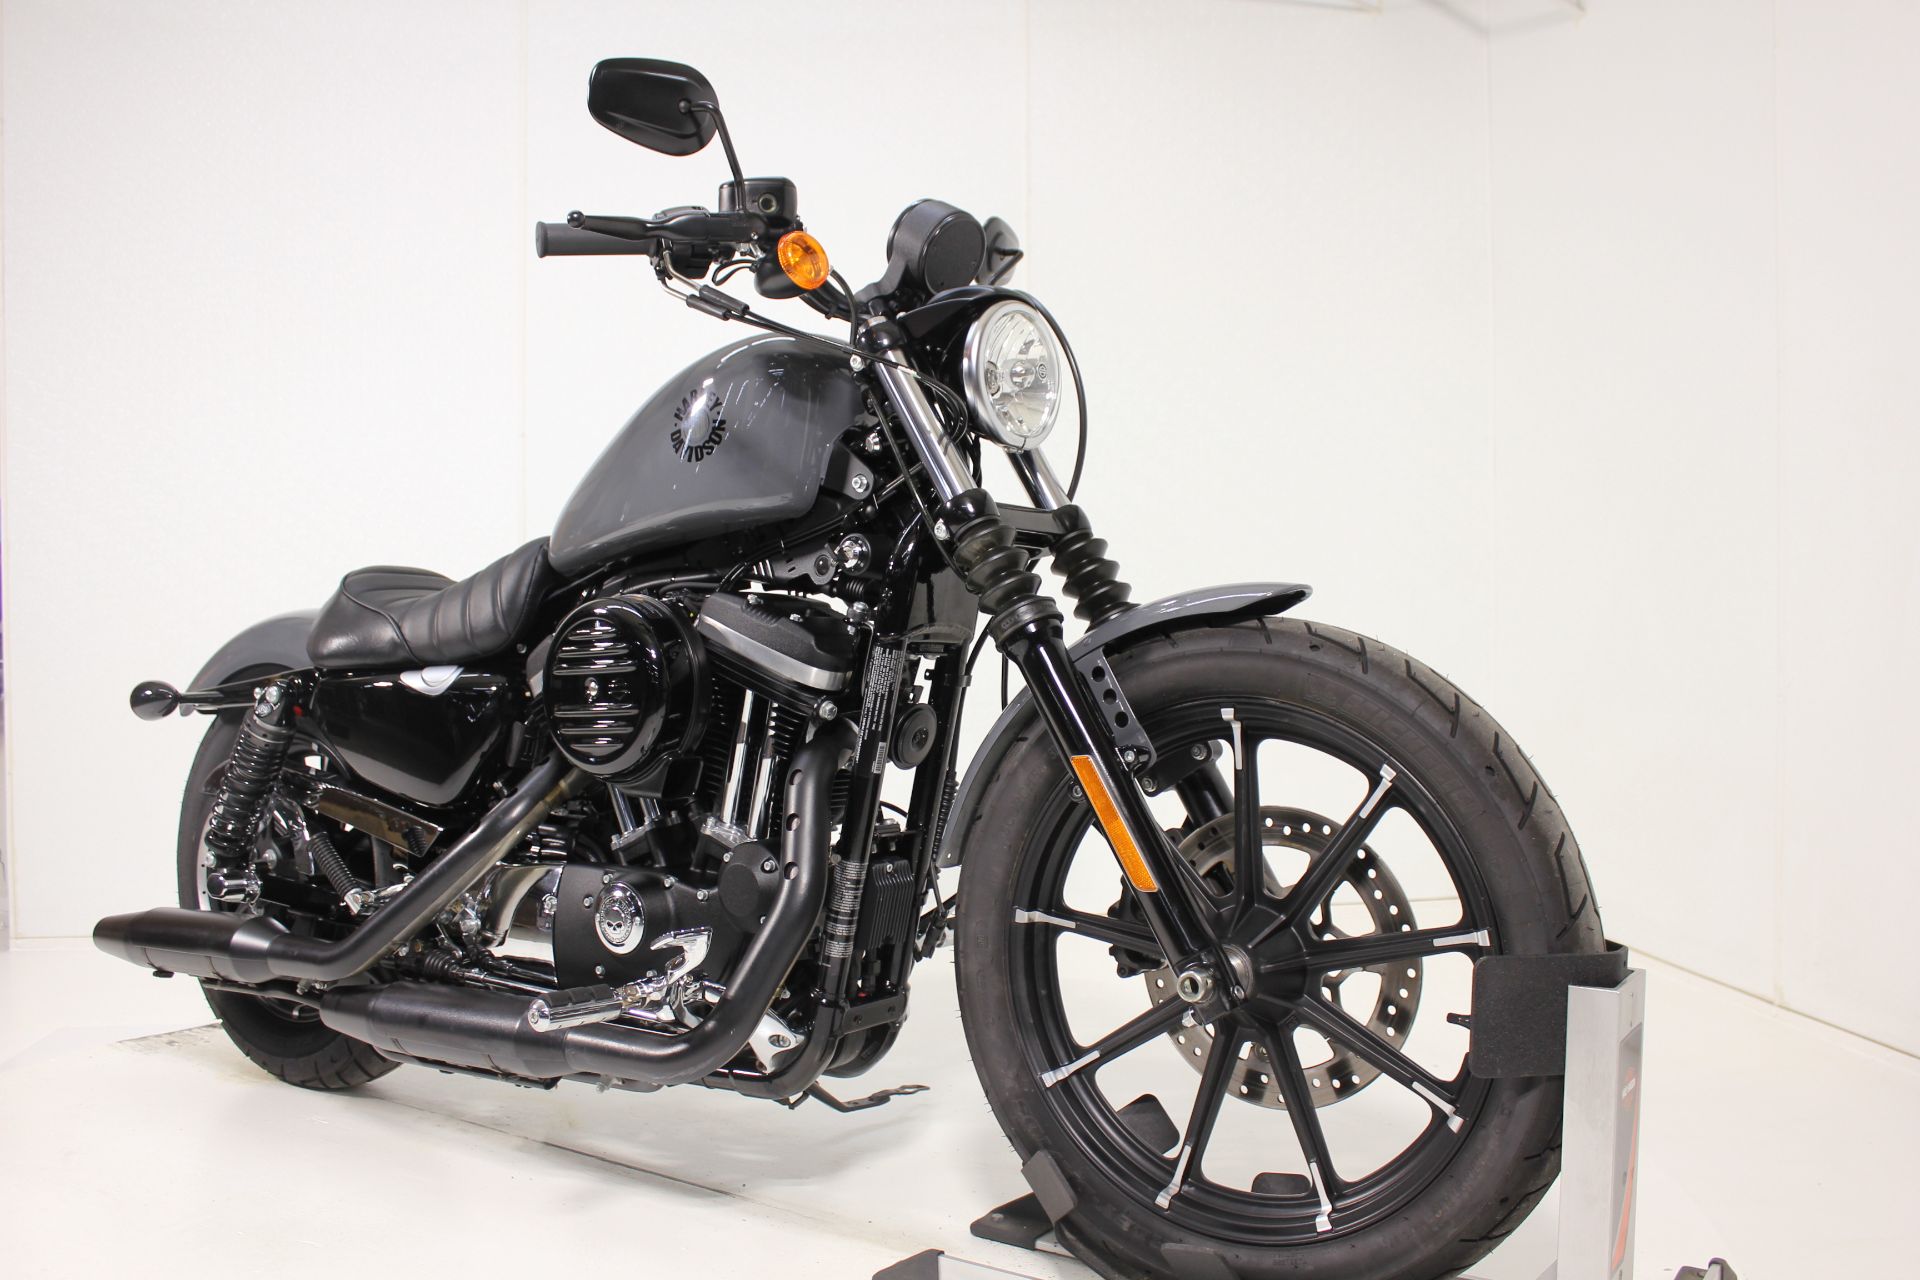 2022 Harley-Davidson Iron 883™ in Pittsfield, Massachusetts - Photo 2